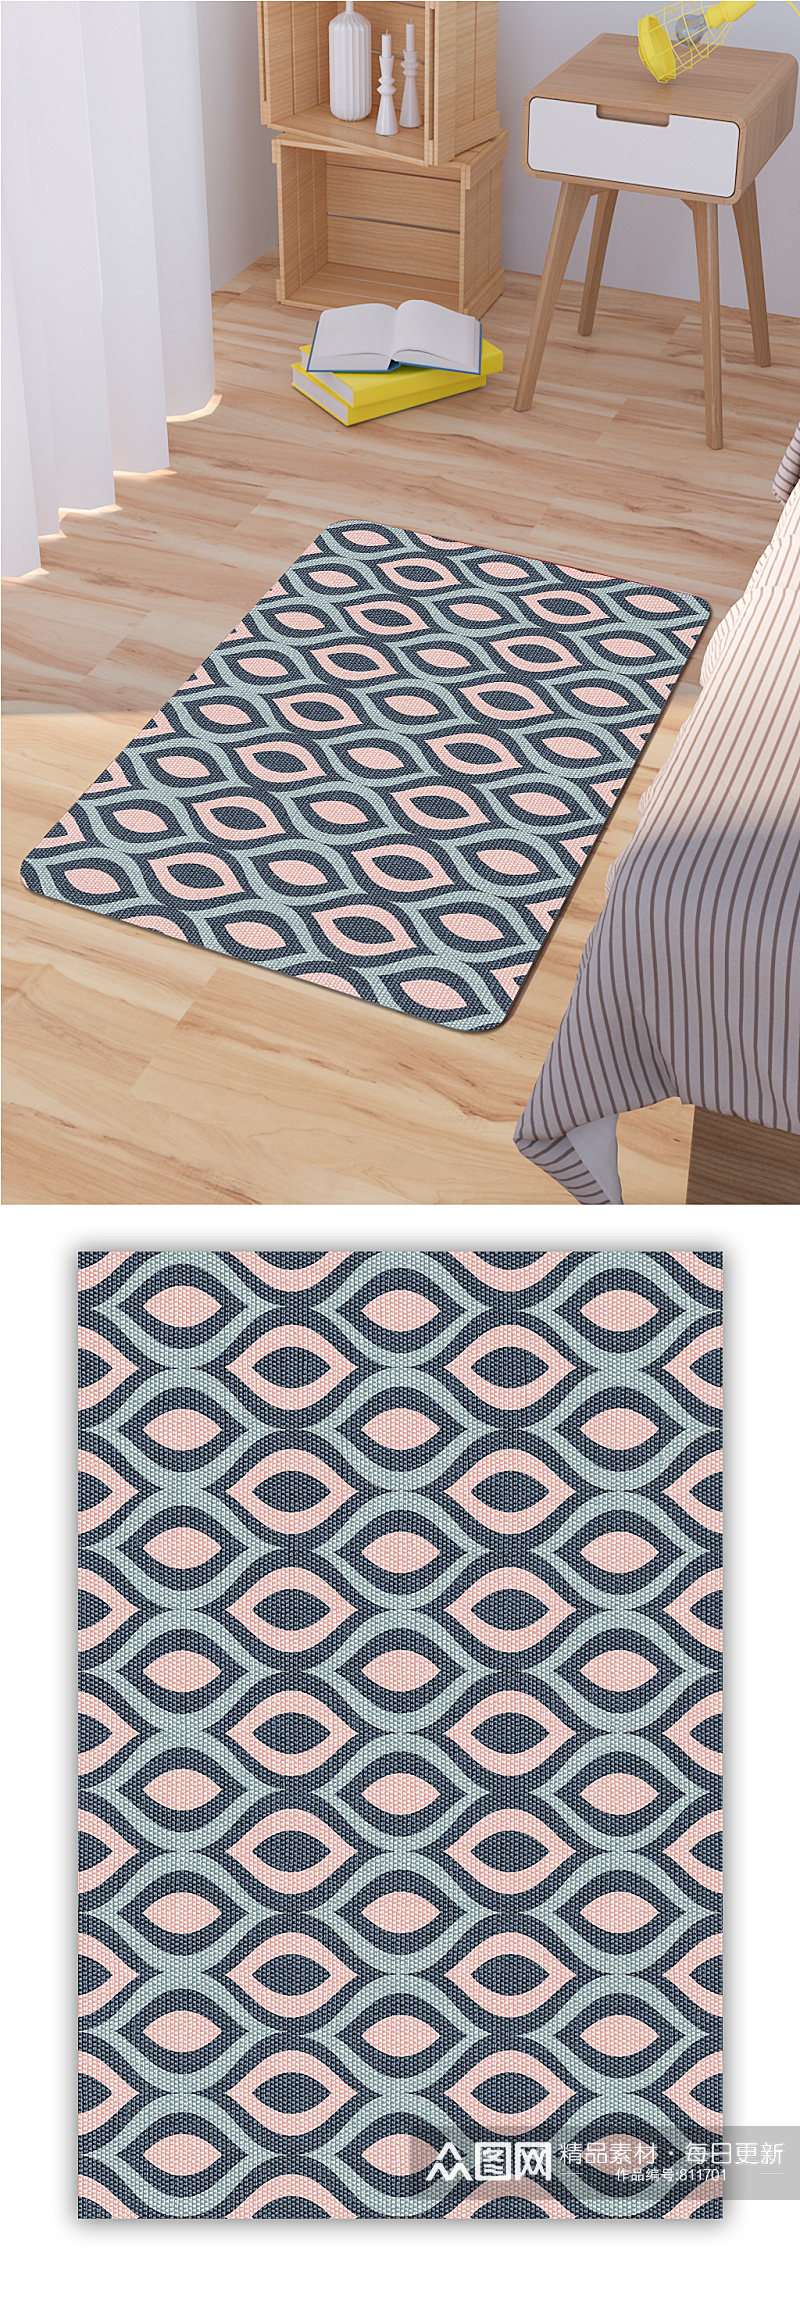 床边地毯中式高档地毯素材